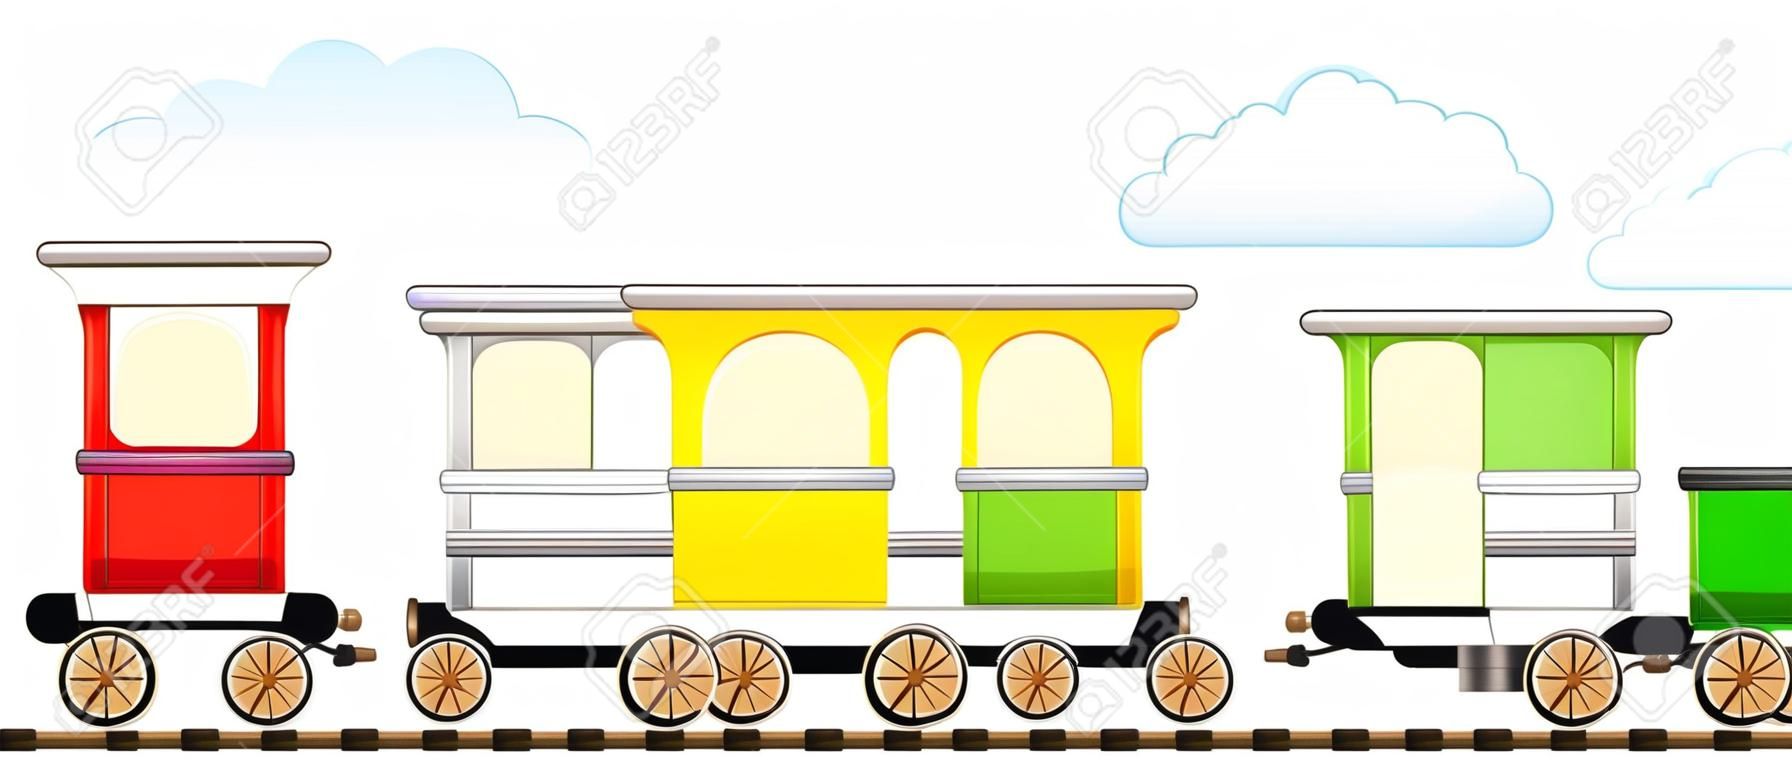 desenho animado isolado trem bonito com carruagem colorida na estrada de ferro